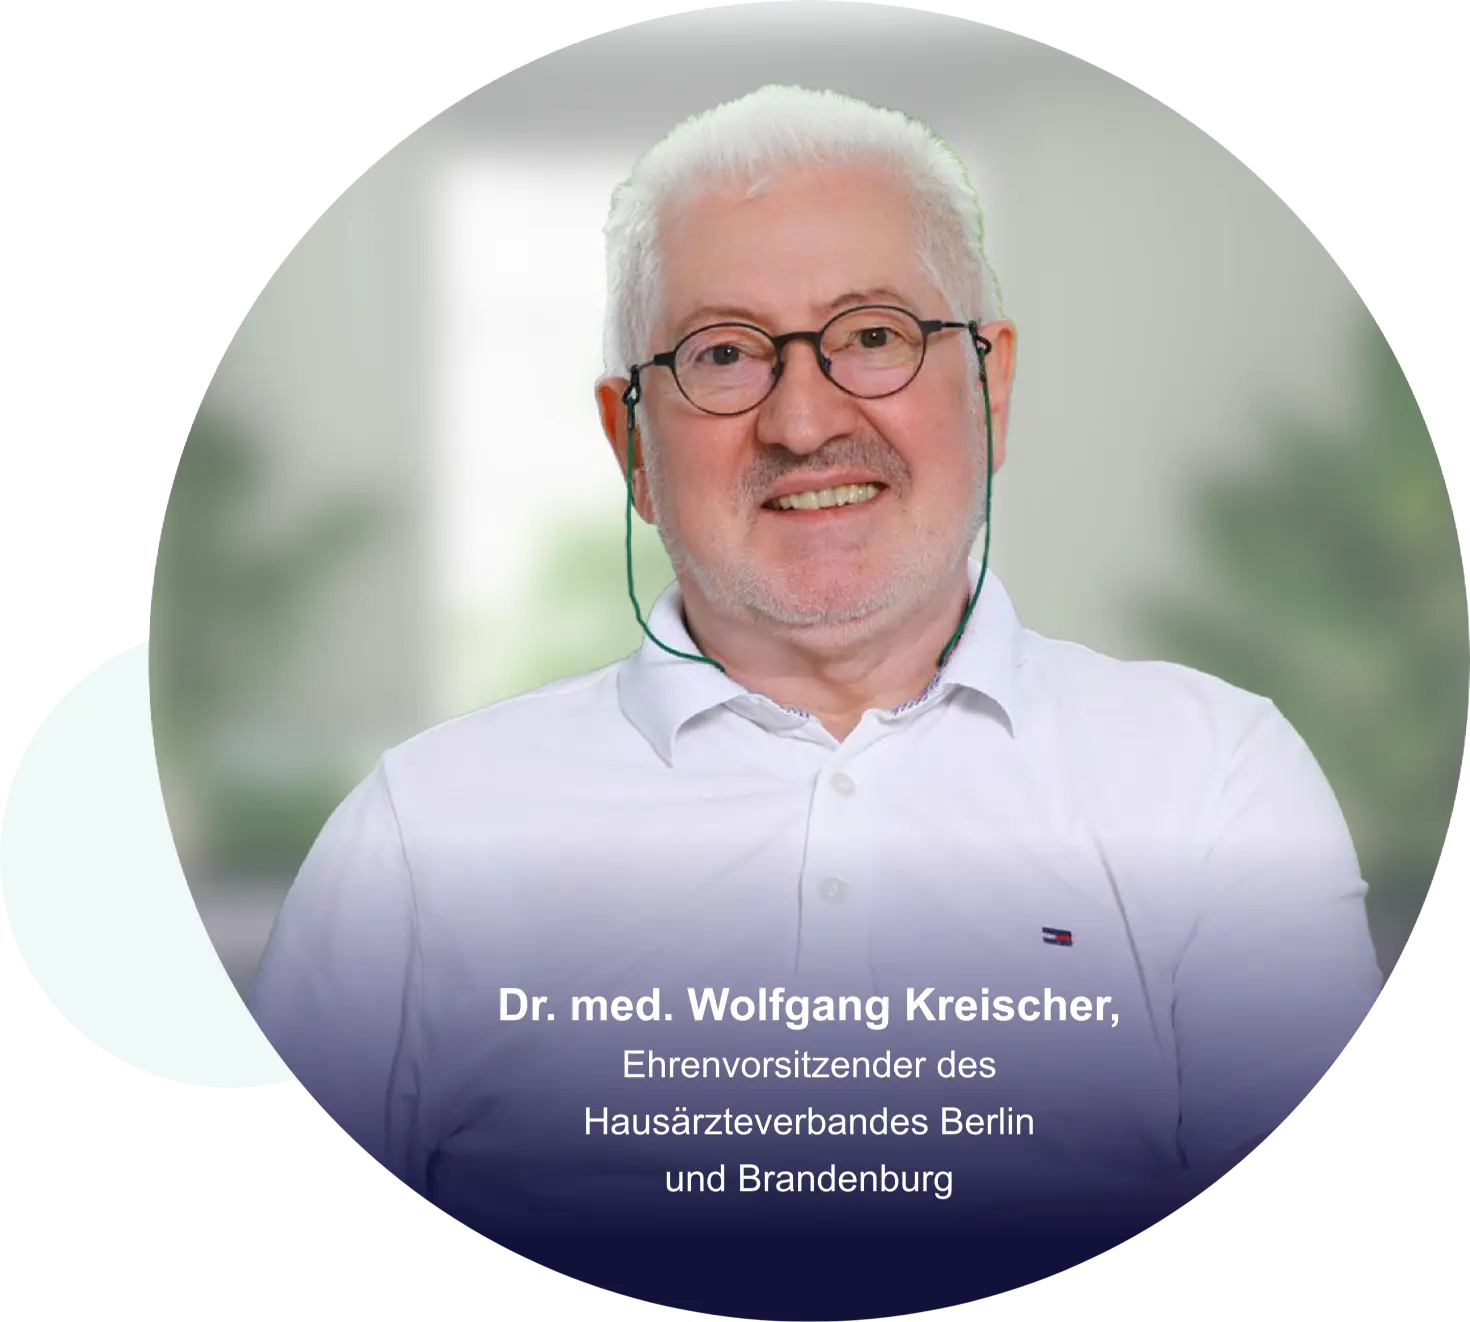 Dr. med. Wolfgang Kreischer